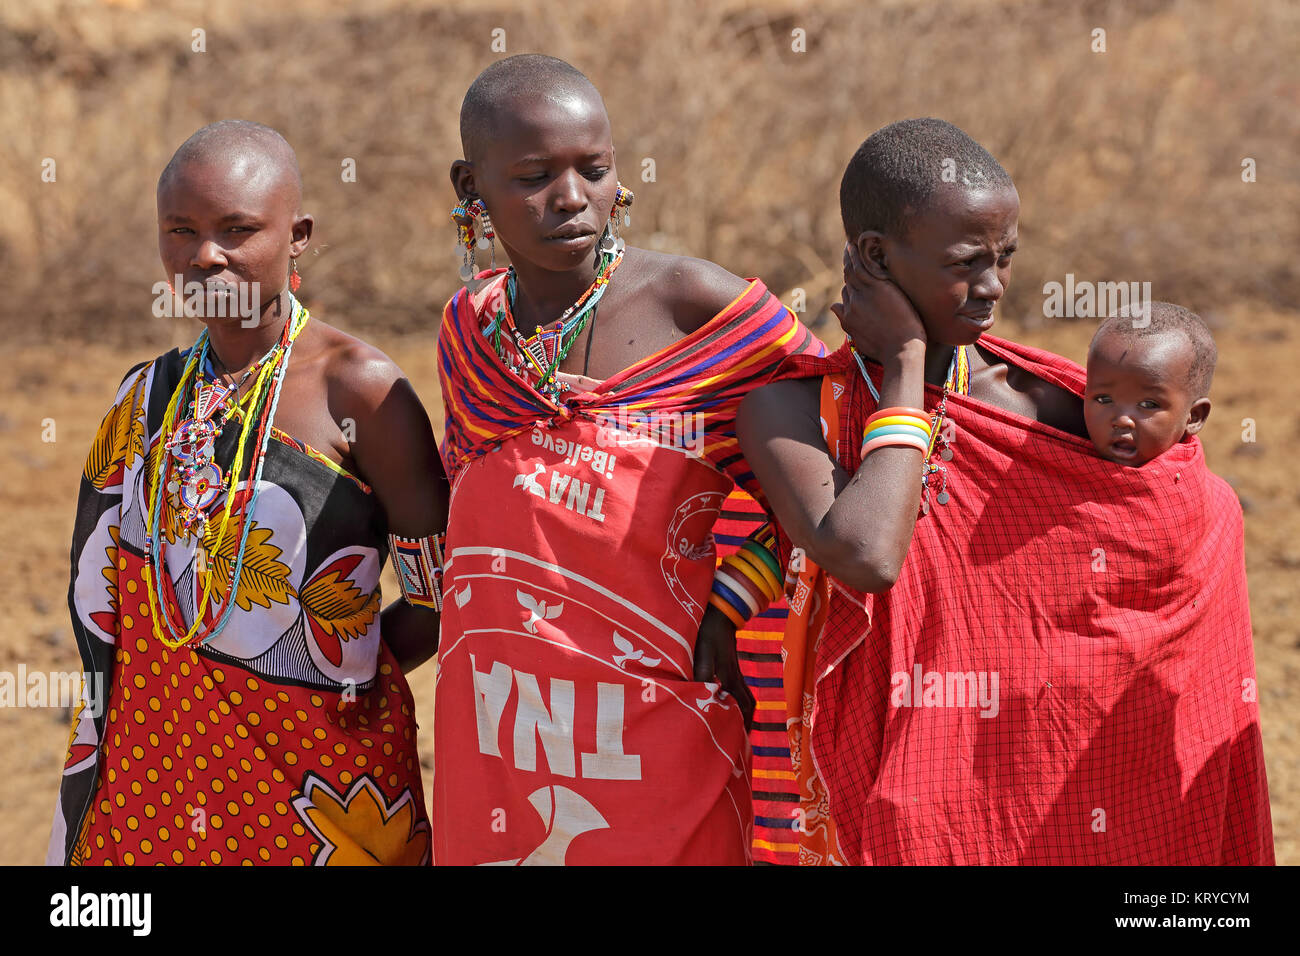 AMBOSELI, KENYA - 31 août 2013:les femmes Masai non identifiés et de l'enfant avec les décorations traditionnelles et colorées de vêtements rouge. Banque D'Images